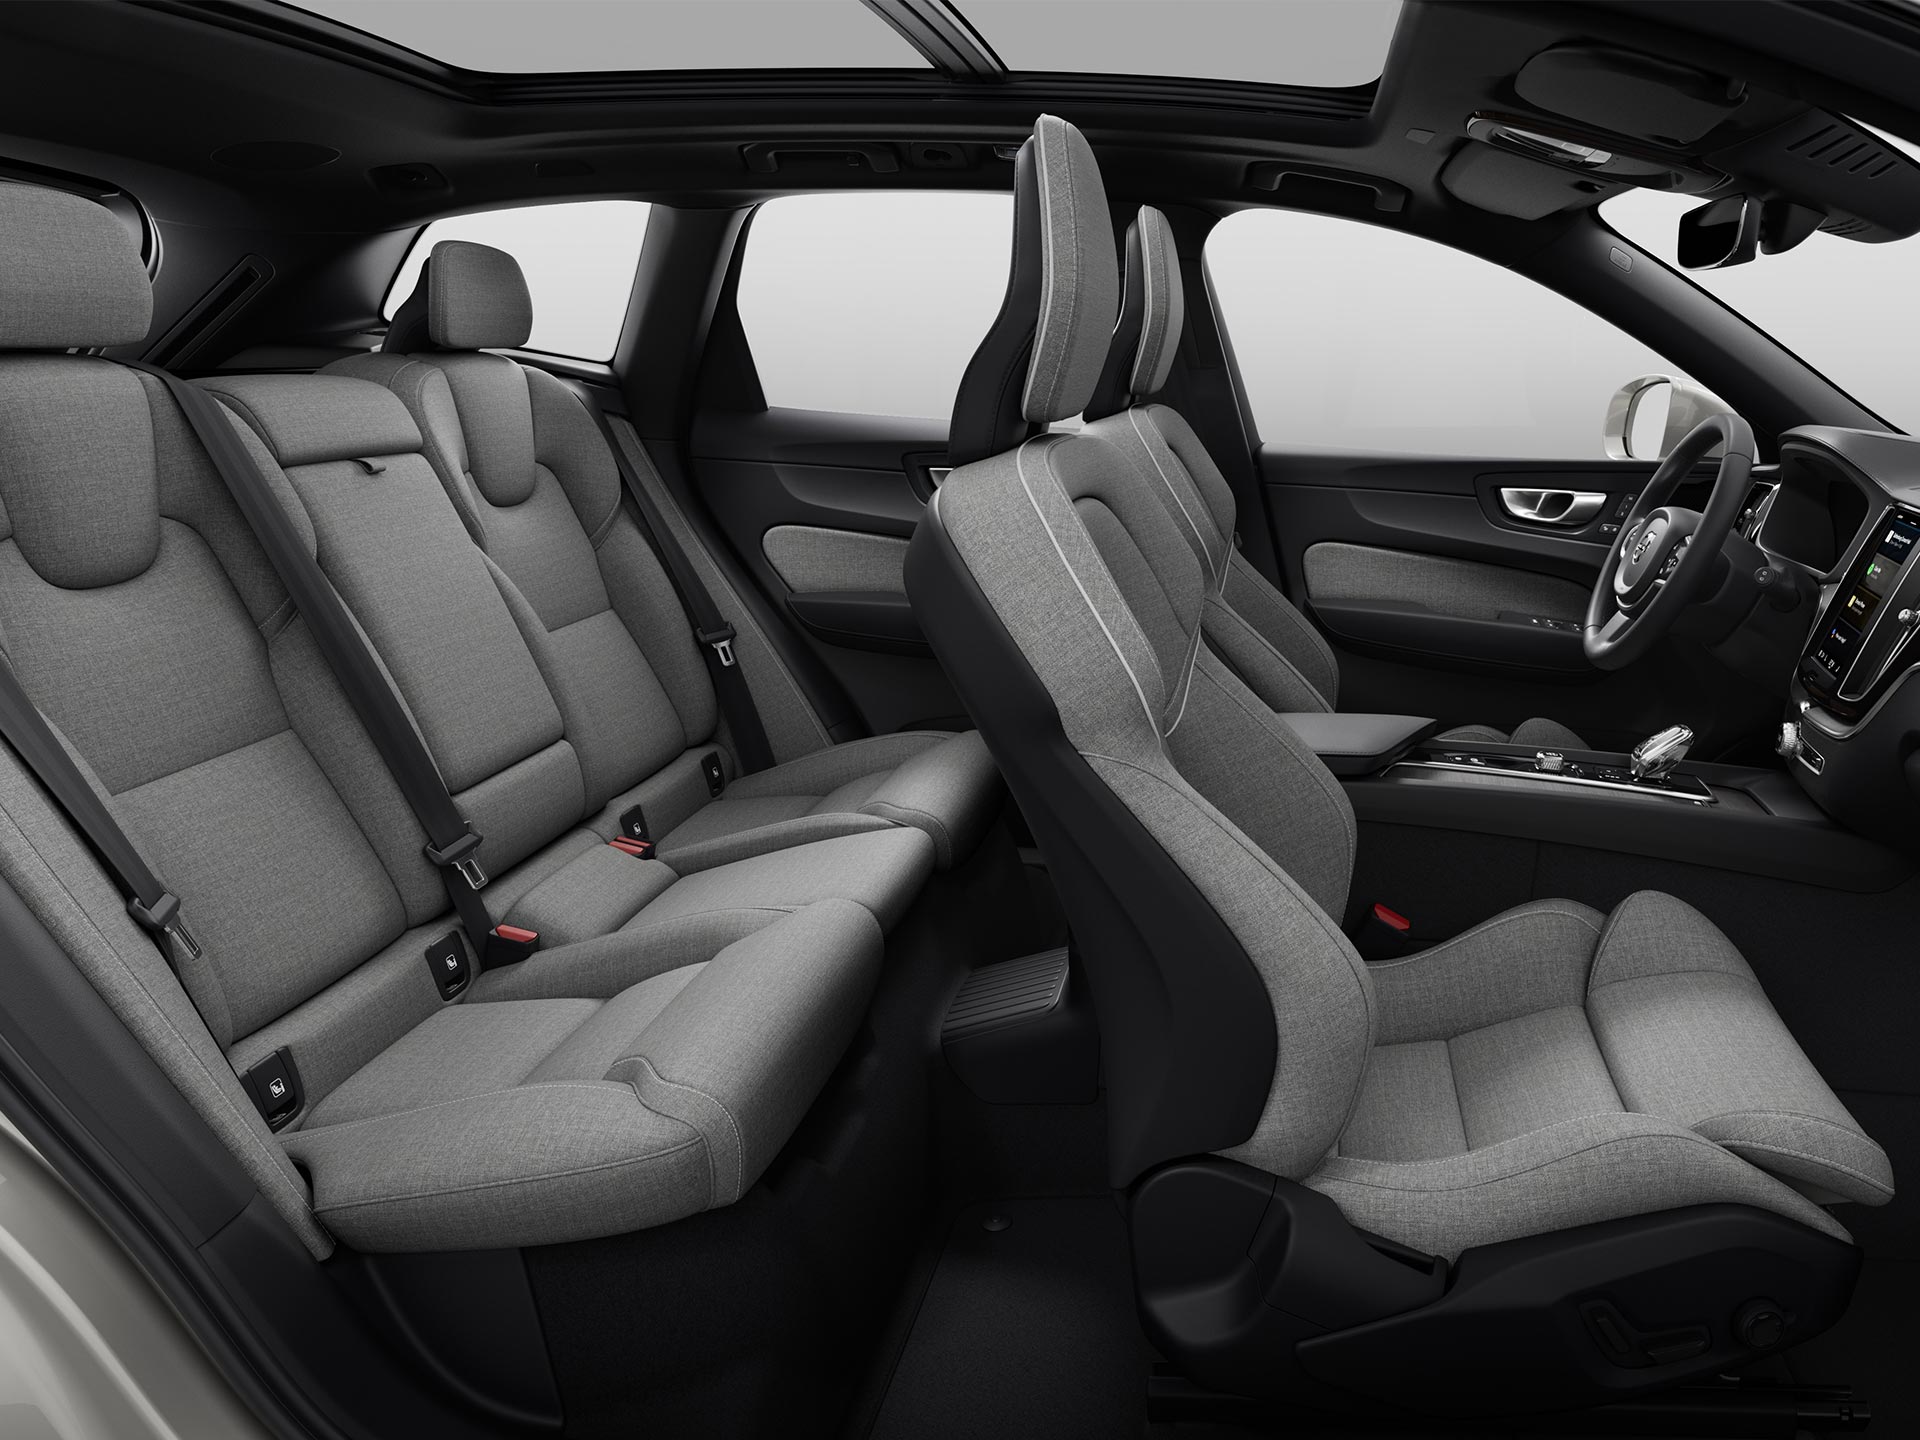 Weitwinkelansicht des geräumigen Innenraums eines Volvo SUV mit gepolsterten Sitzen.